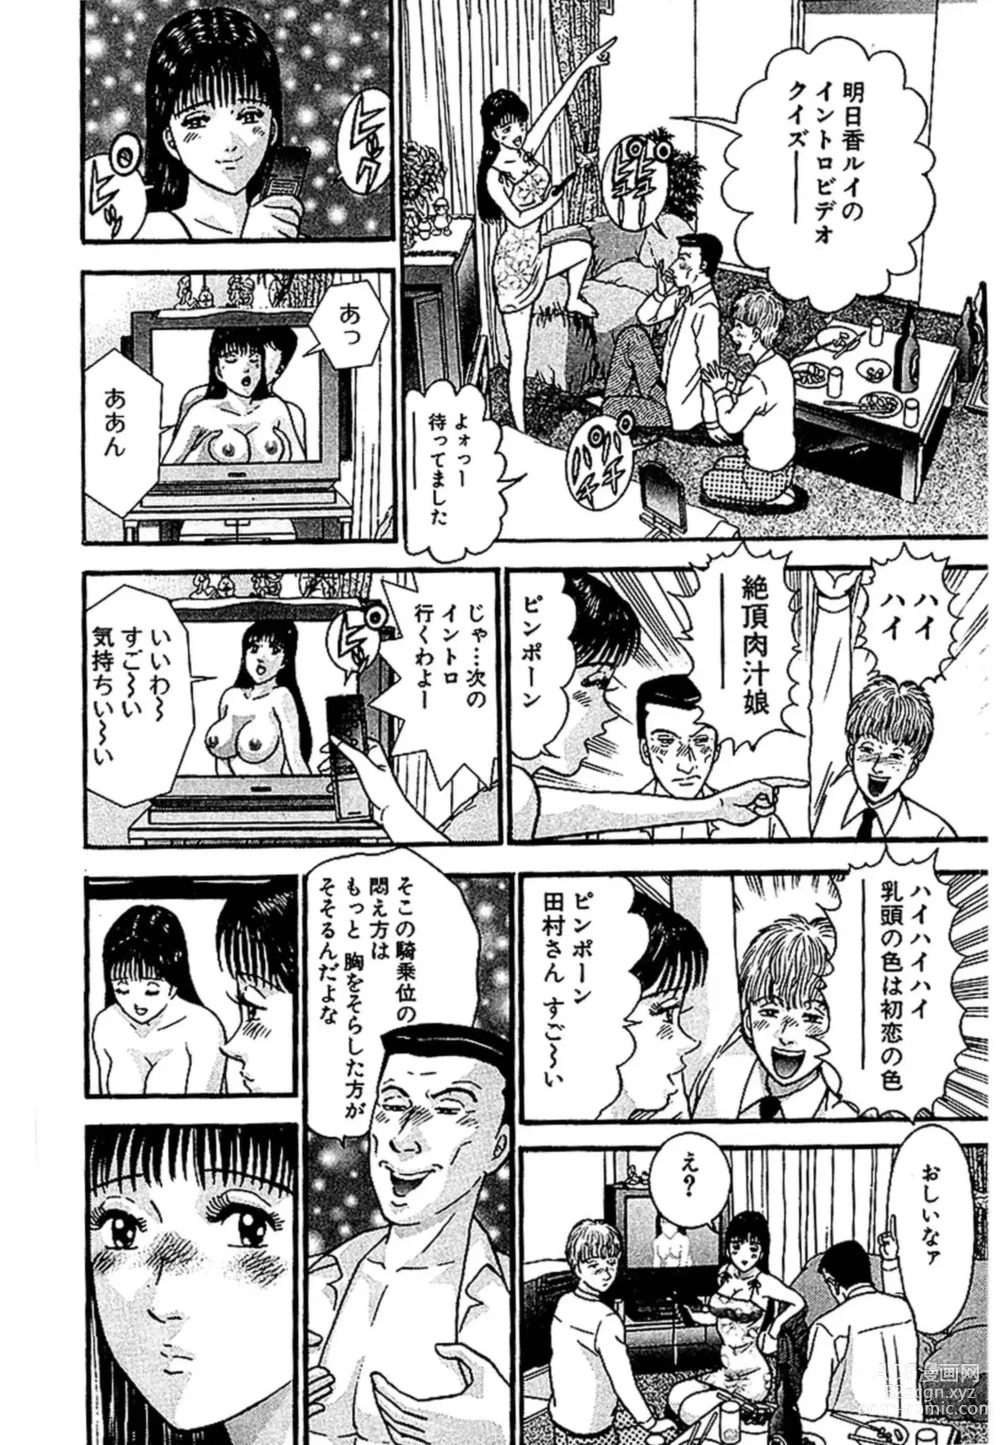 Page 195 of manga Sekkusuresu Shinsō-ban 1